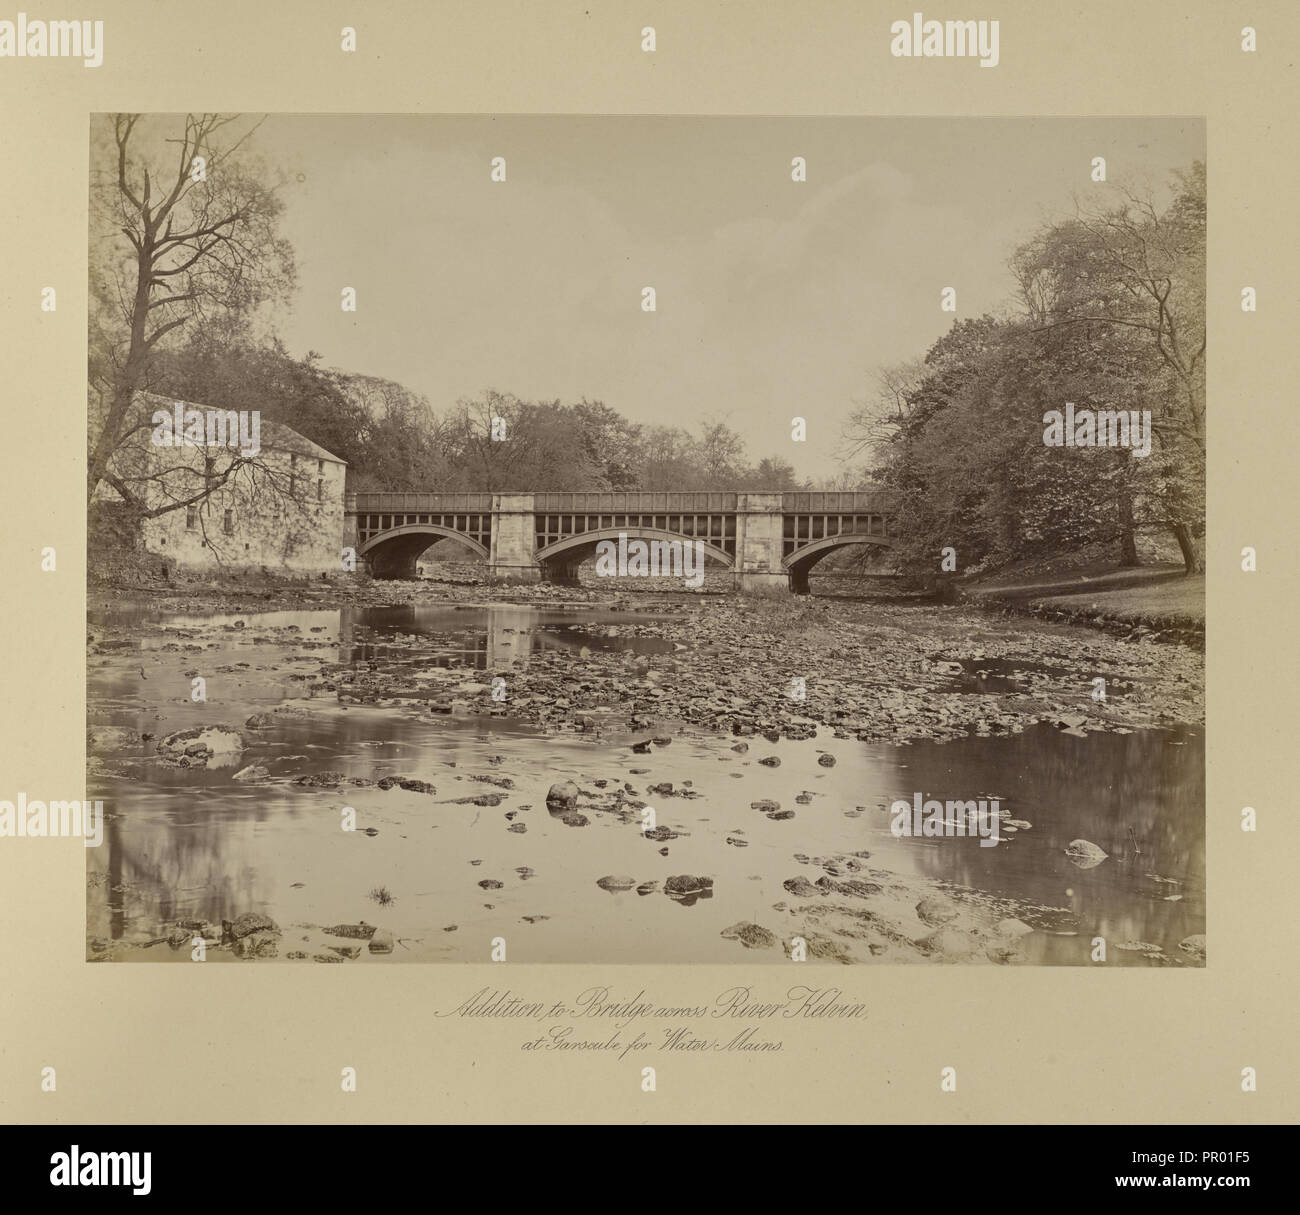 Neben der Brücke über den Fluss Kelvin; Thomas Annan, Scottish, 1829-1887, Glasgow, Schottland; 1877; Eiklar silber Drucken Stockfoto